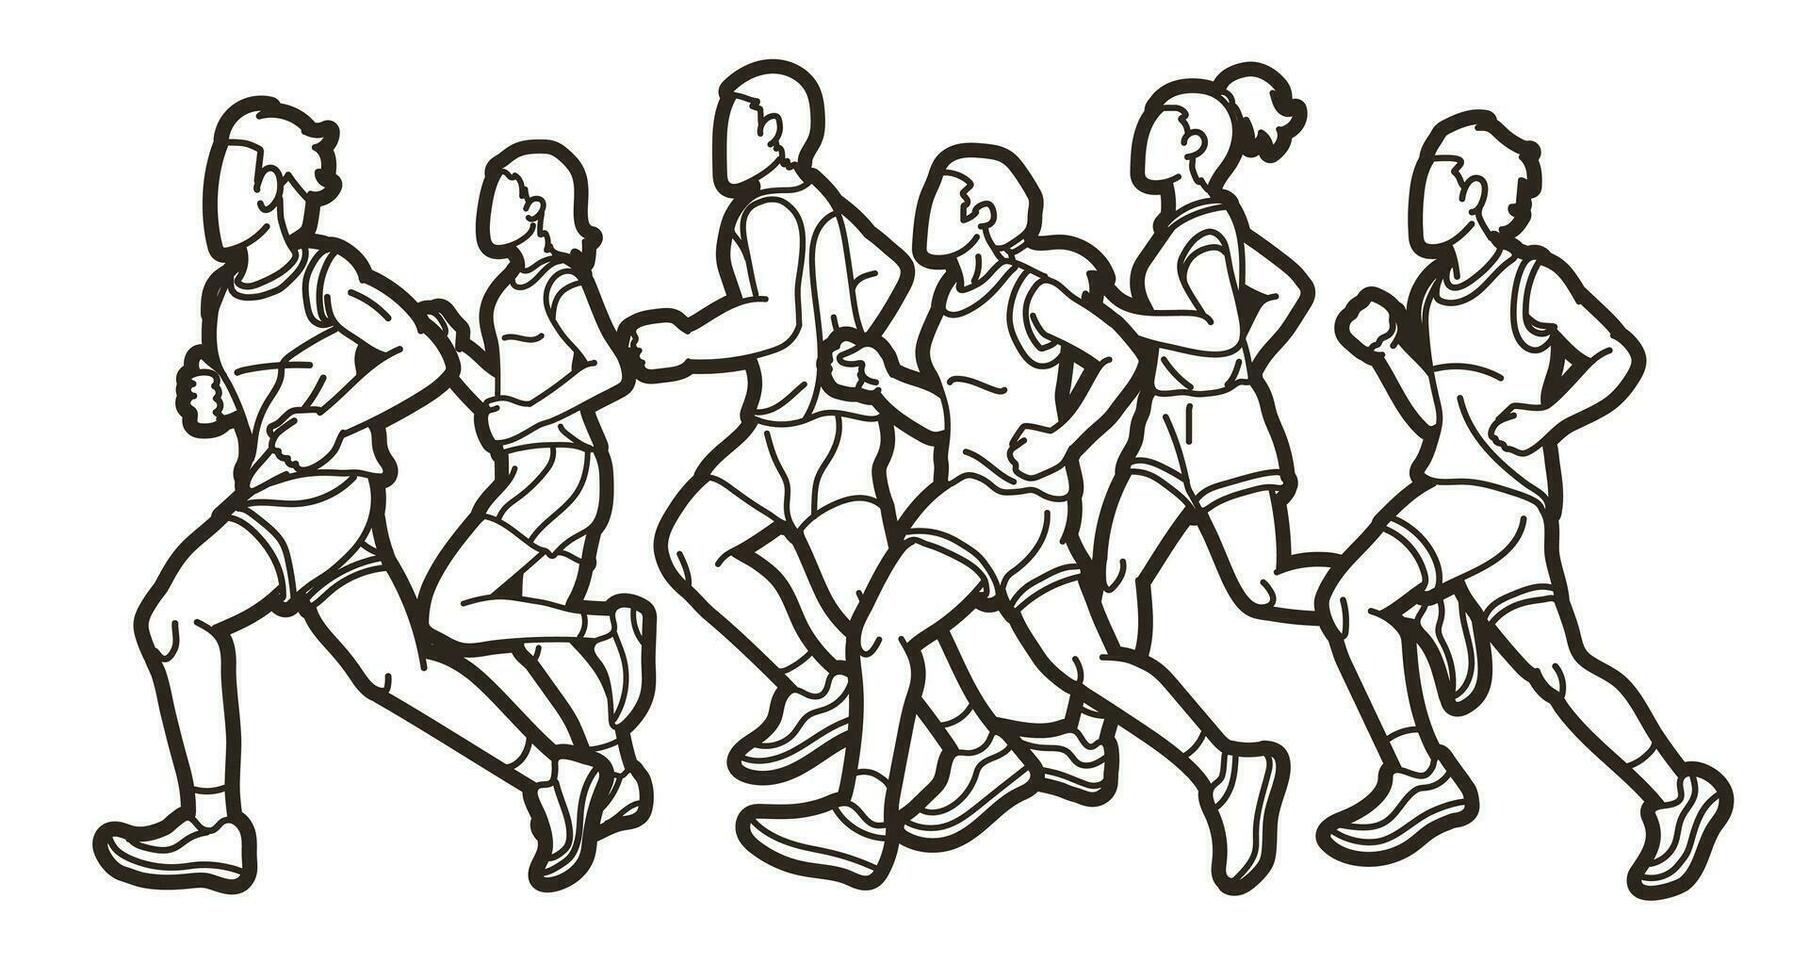 Gruppe von Menschen Laufen zusammen Karikatur Sport Grafik Vektor